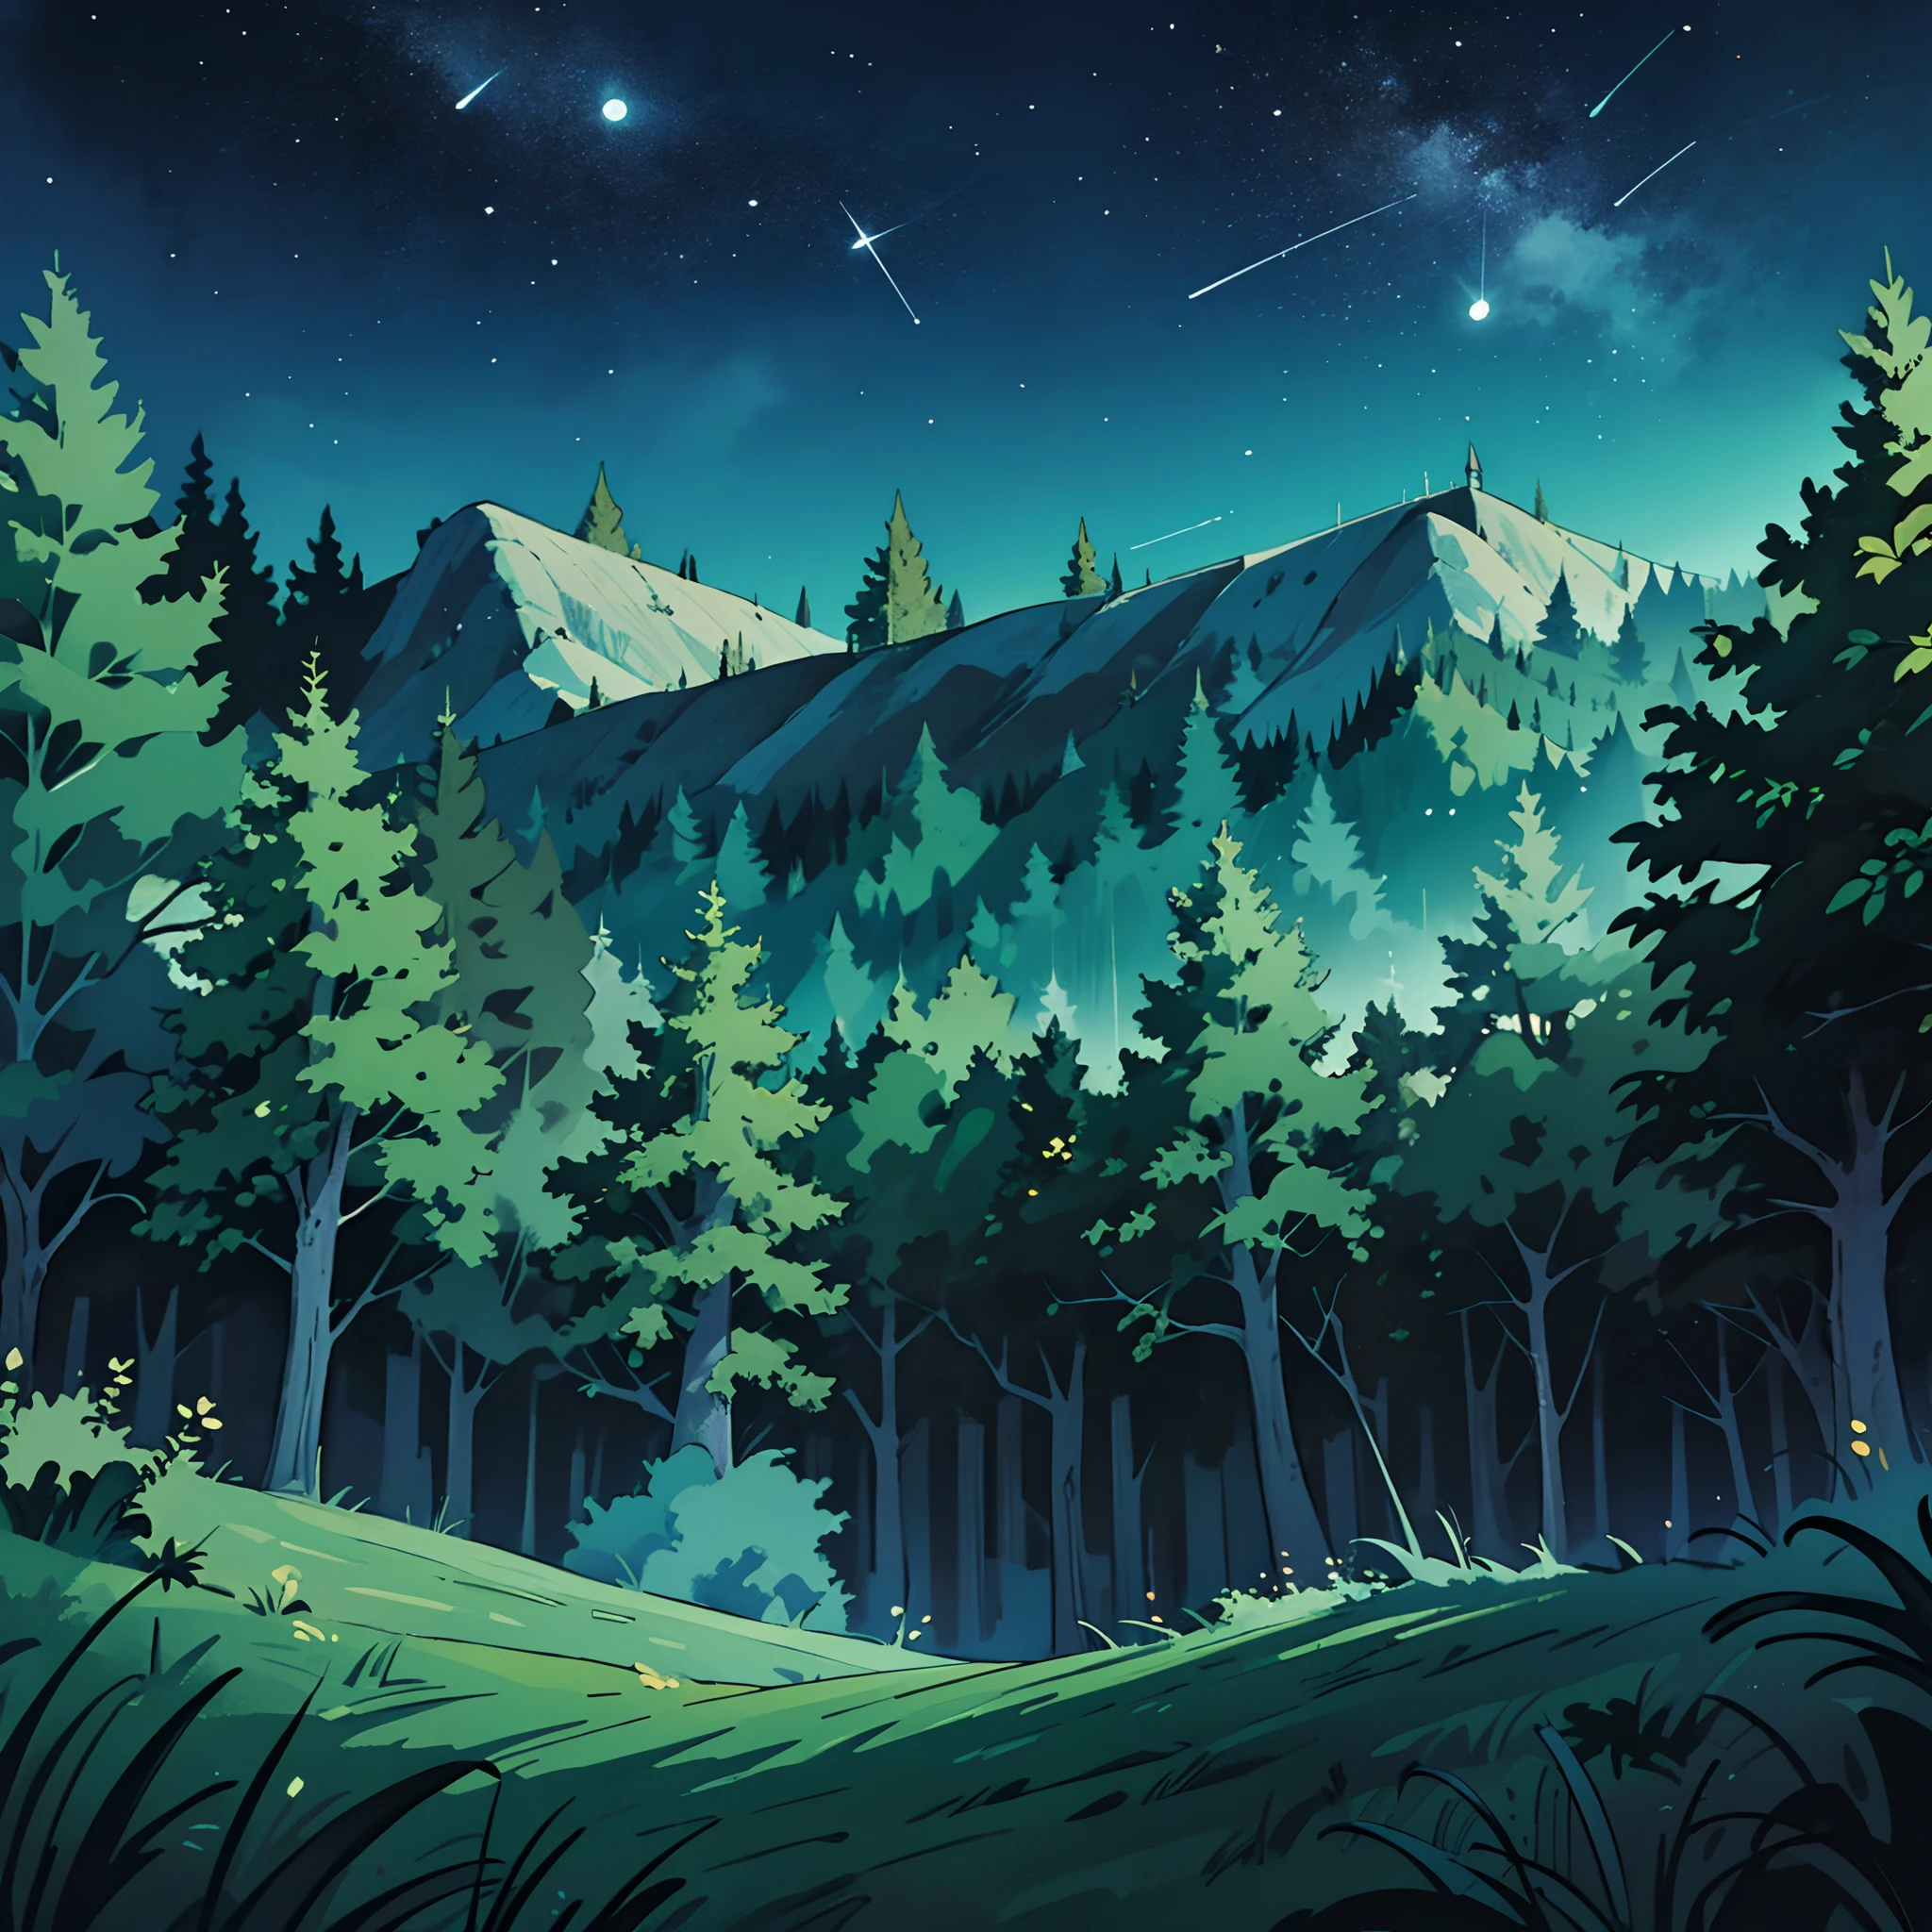 Plano amplio de la noche de verano del bosque., desierto con árboles verdes vibrantes y un cielo nocturno claro y brillante. fondo animado